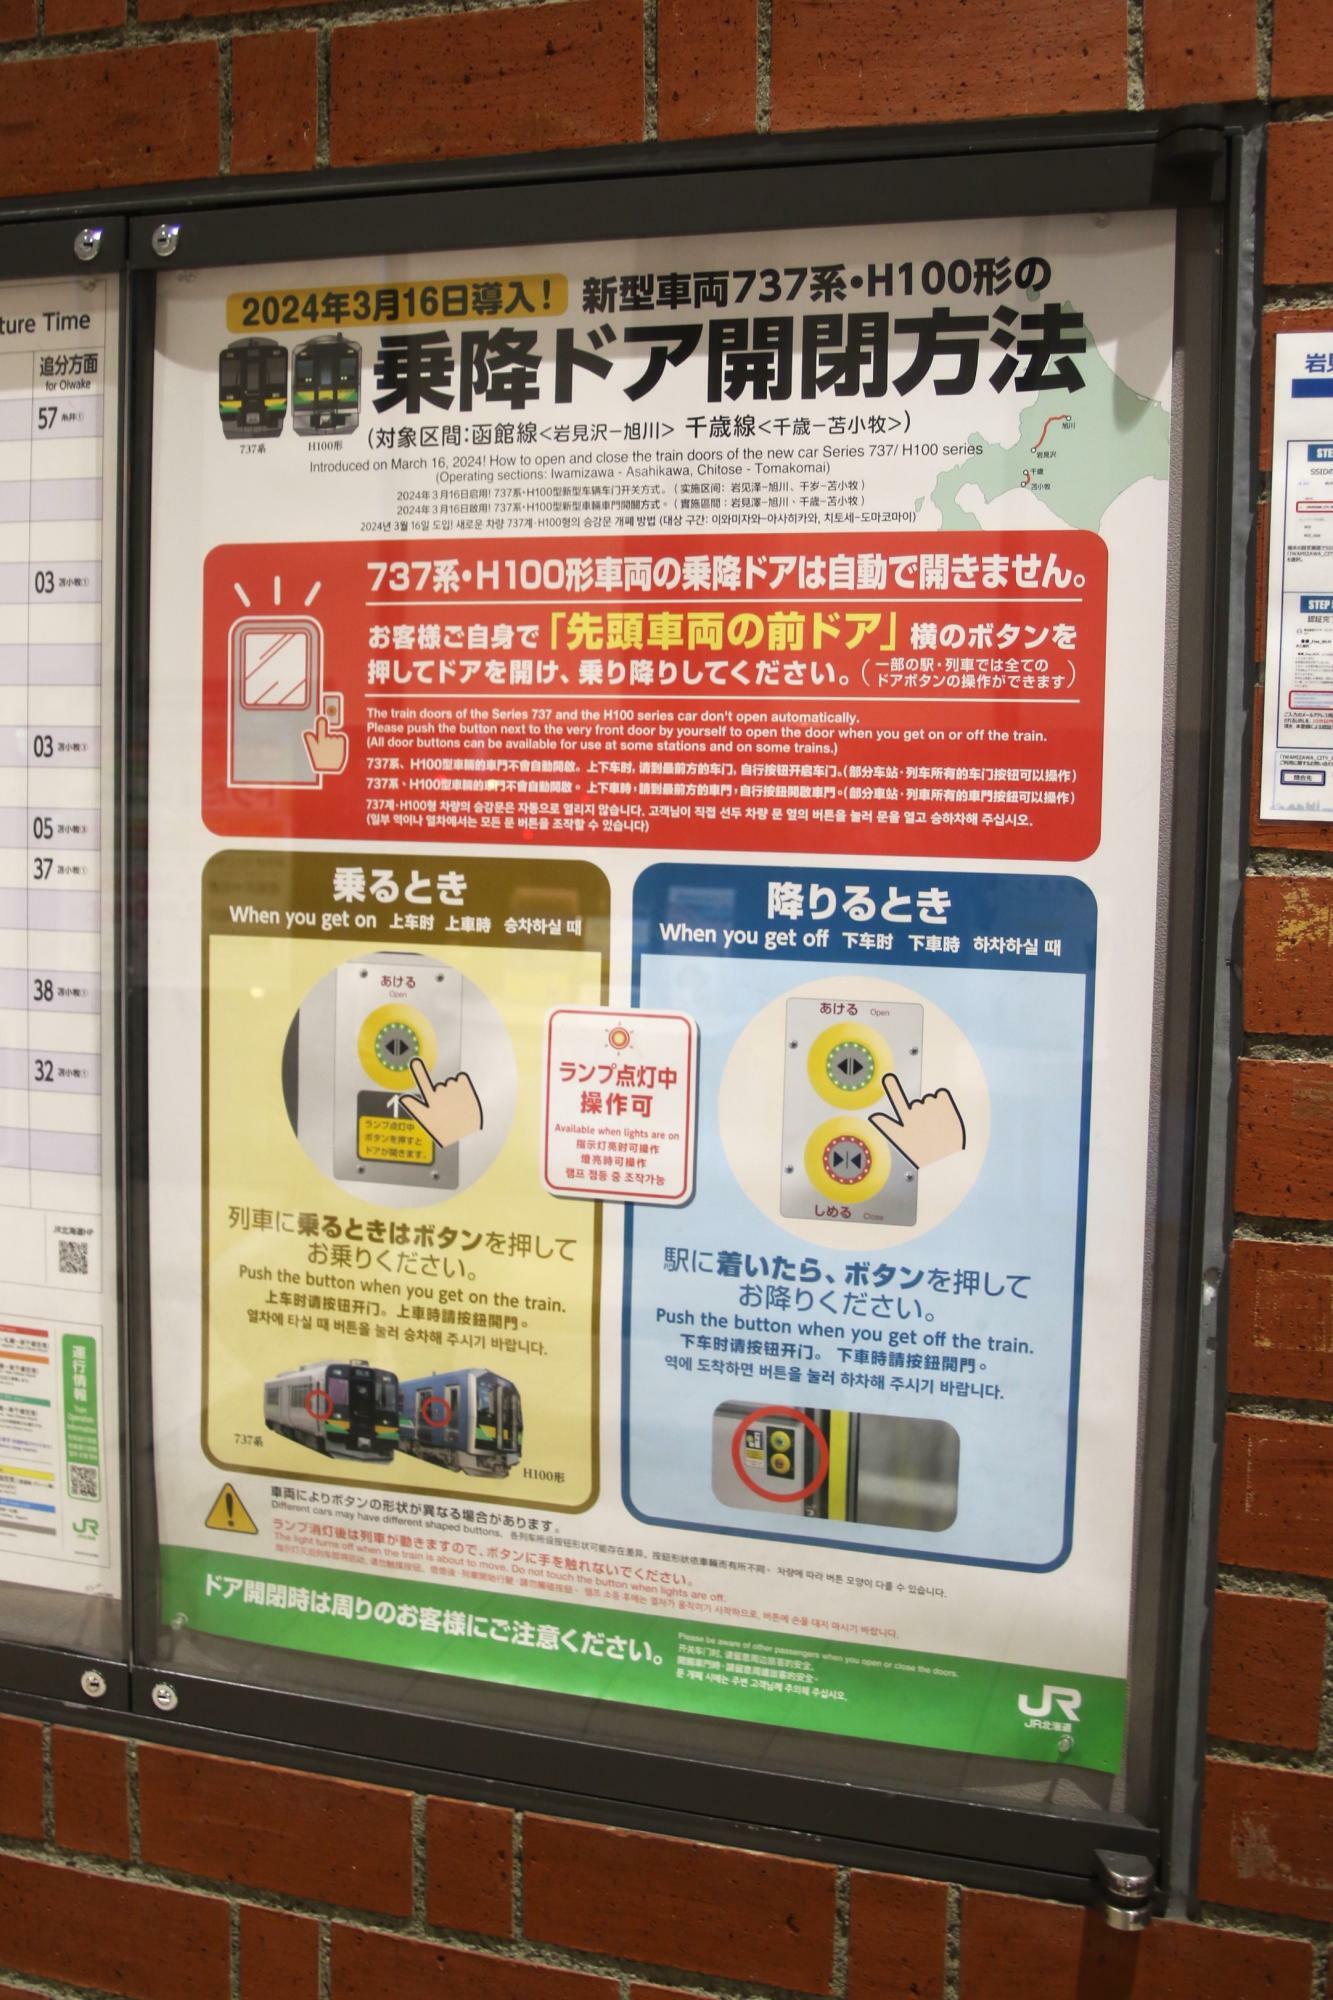 岩見沢駅にあった乗降ドア開閉方法ポスター